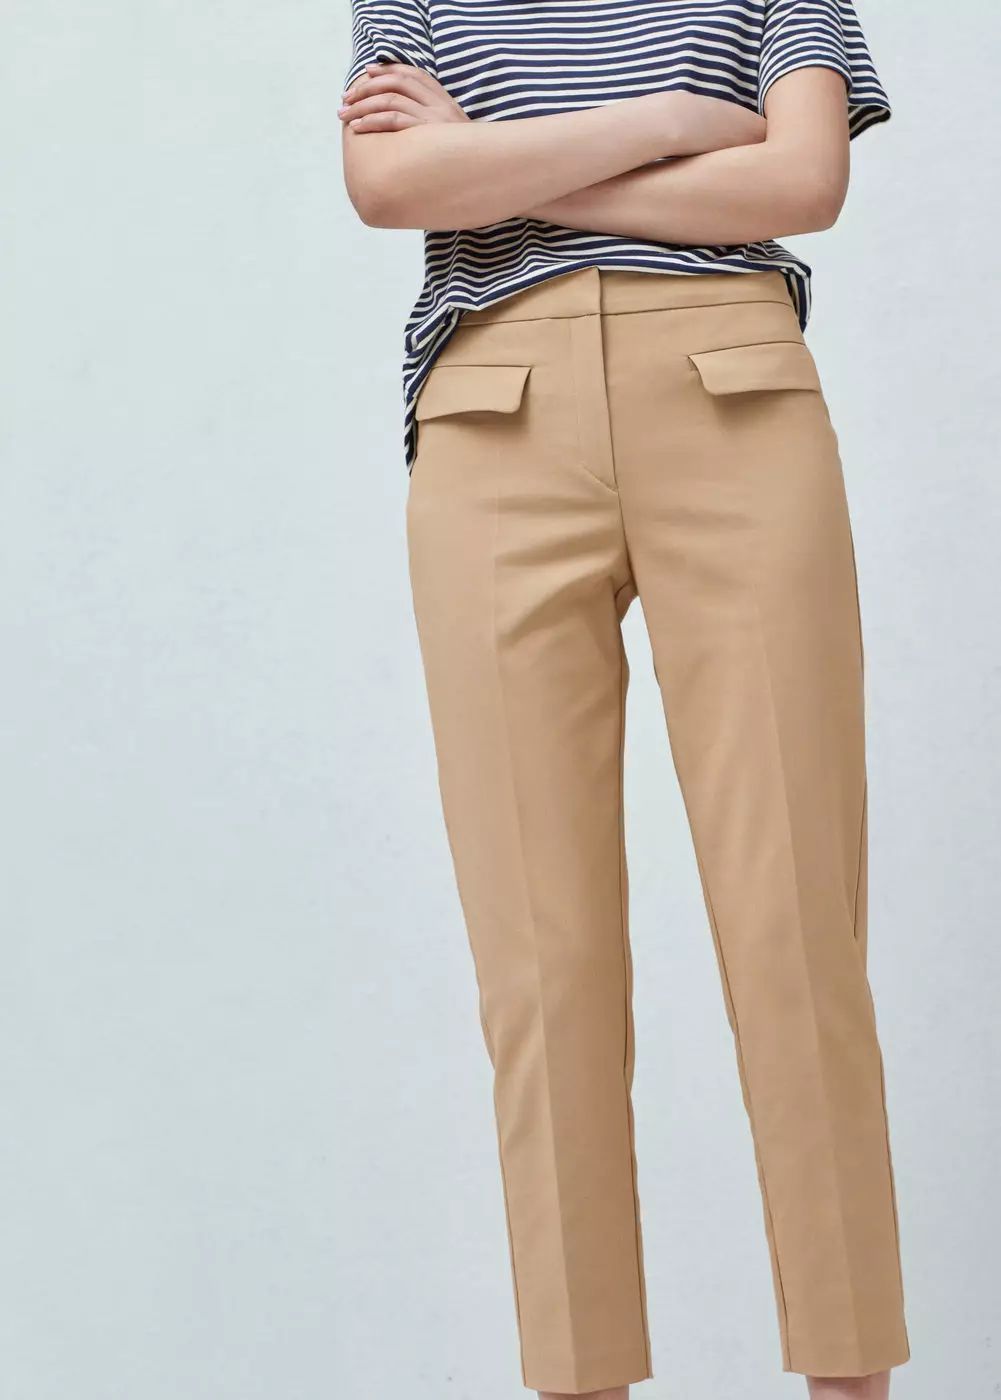 Moda Pantolon 2021: Kadın Şık Modelleri, Moda Trendleri 917_316